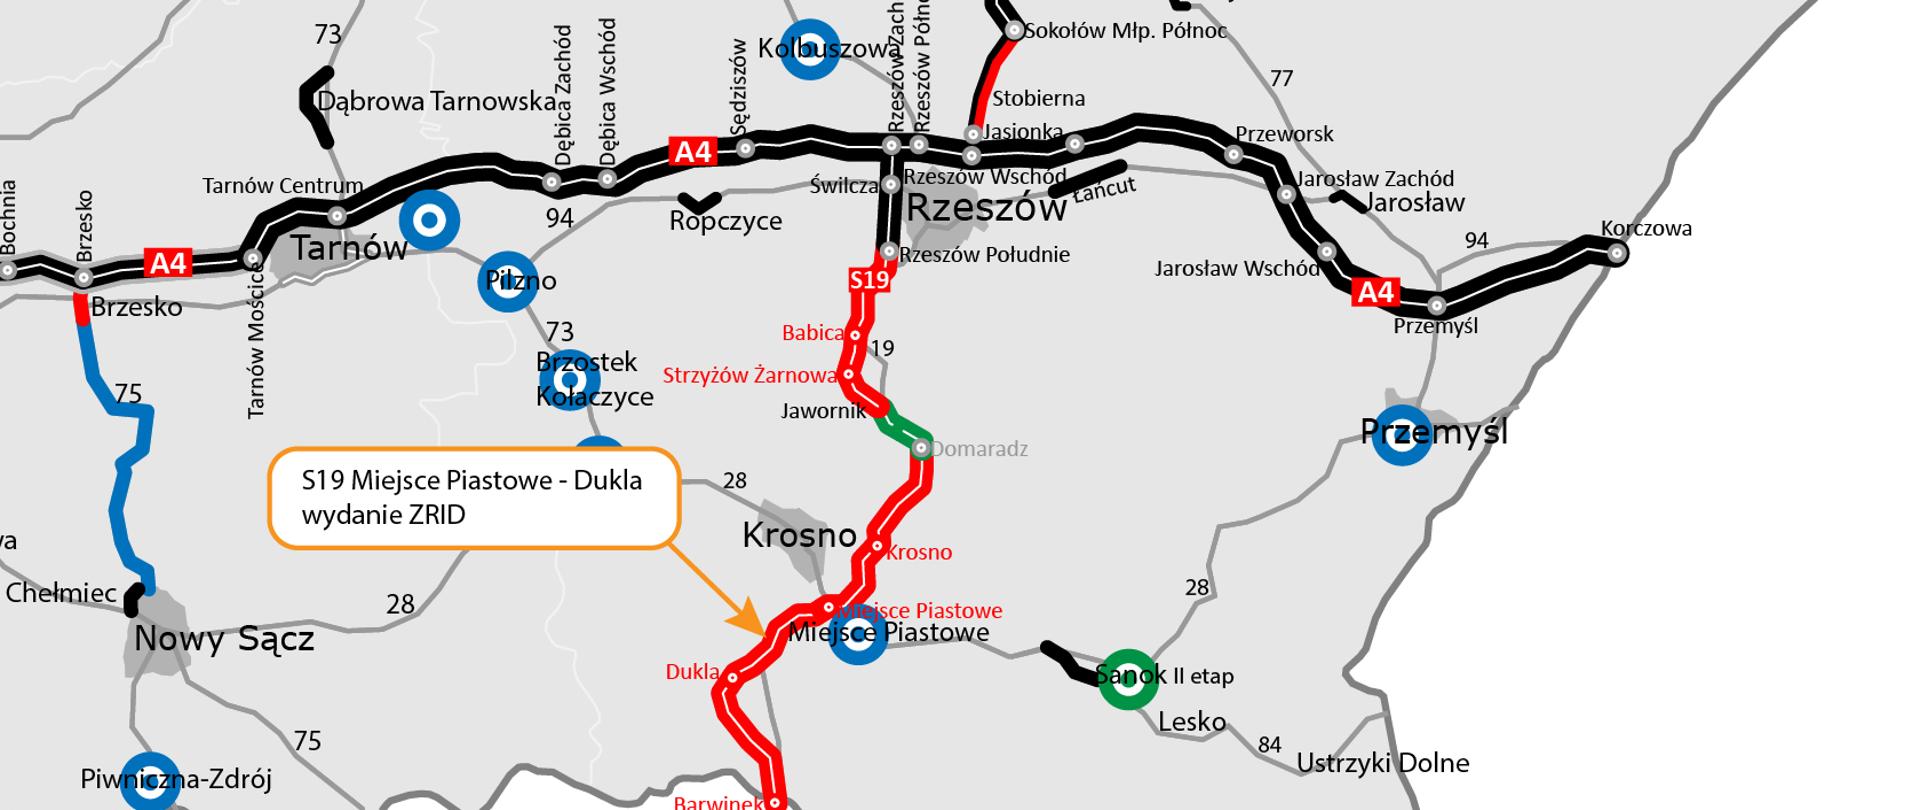 Mapa dot. wydania ZRID dla S19 Miejsce Piastowe - Dukla, zaznaczony odcinek dla którego wydawany jest ZRID